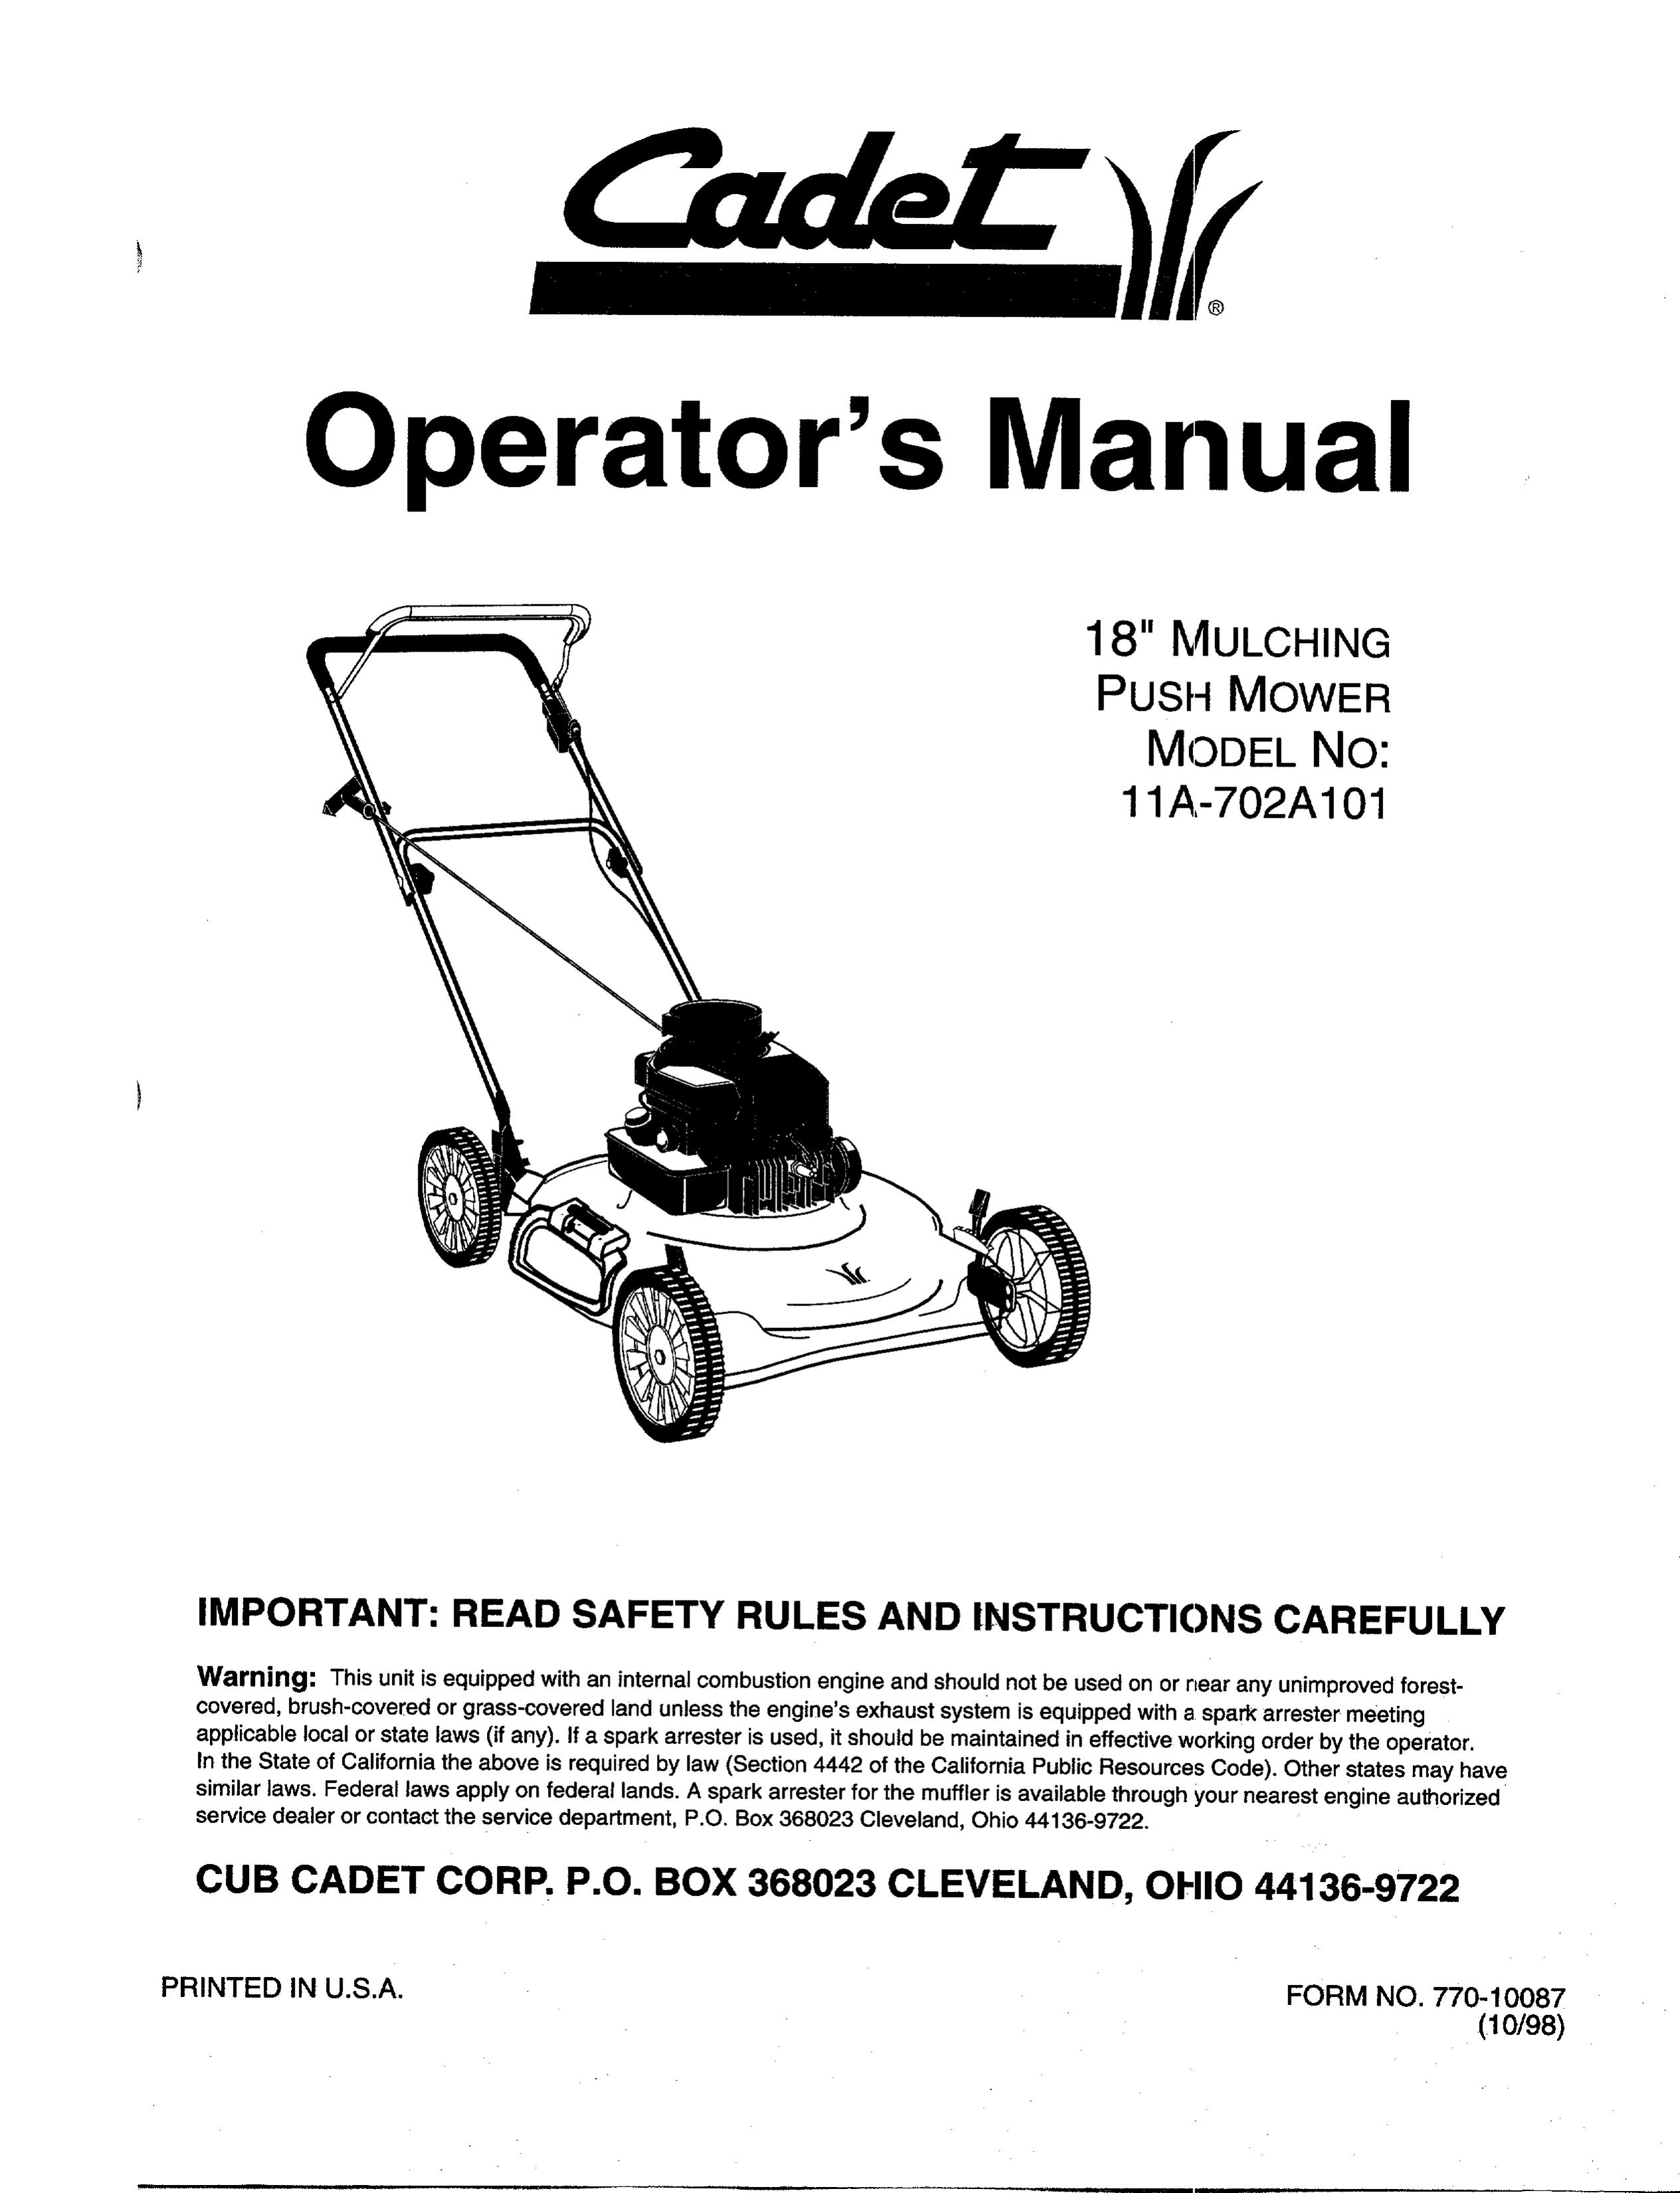 Cub Cadet 11A-702A101 Lawn Mower User Manual